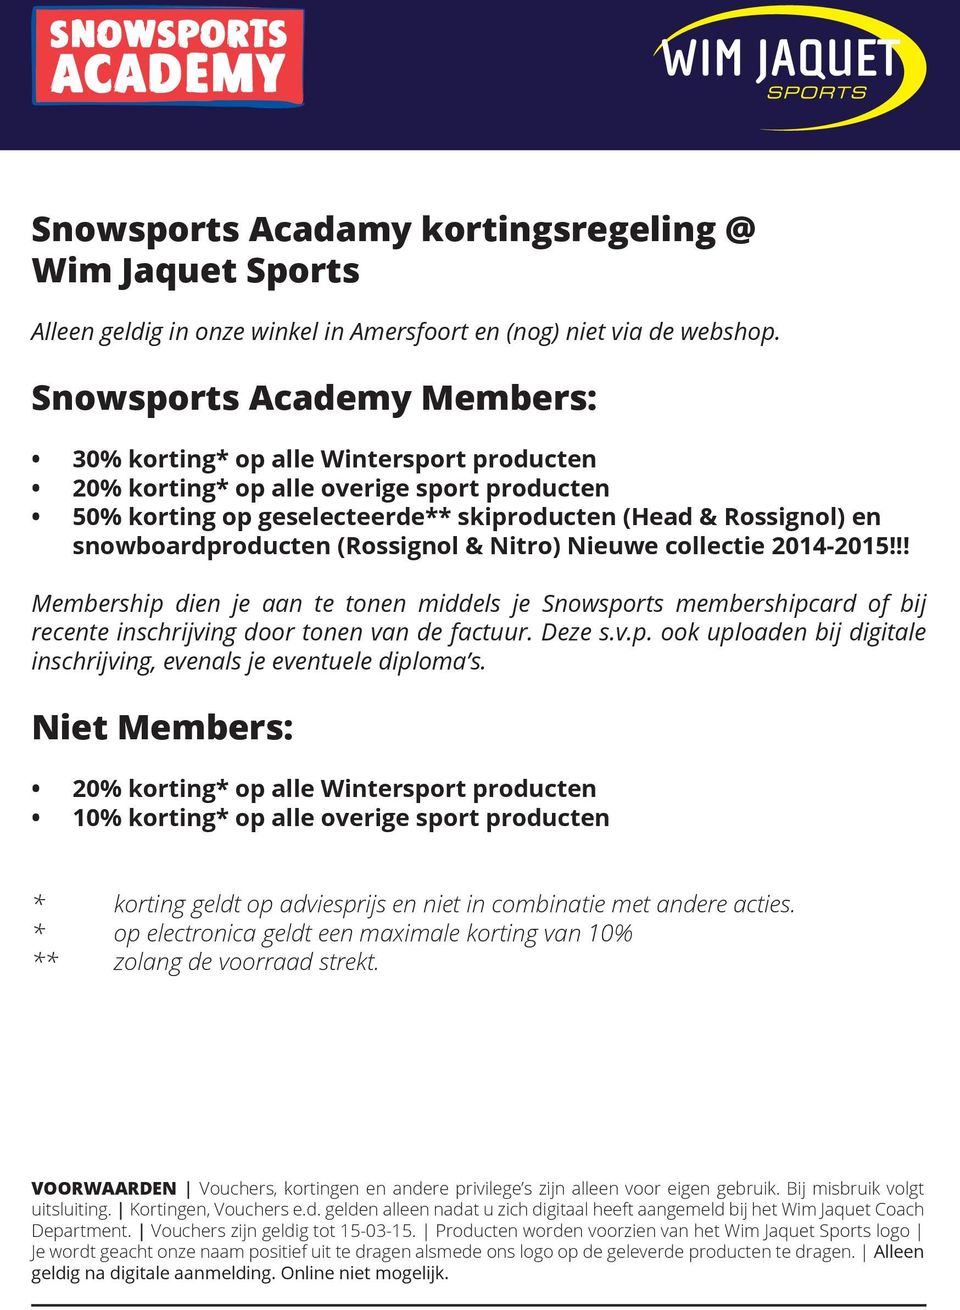 snowboardproducten (Rossignol & Nitro) Nieuwe collectie 2014-2015!!! Membership dien je aan te tonen middels je Snowsports membershipcard of bij recente inschrijving door tonen van de factuur. Deze s.